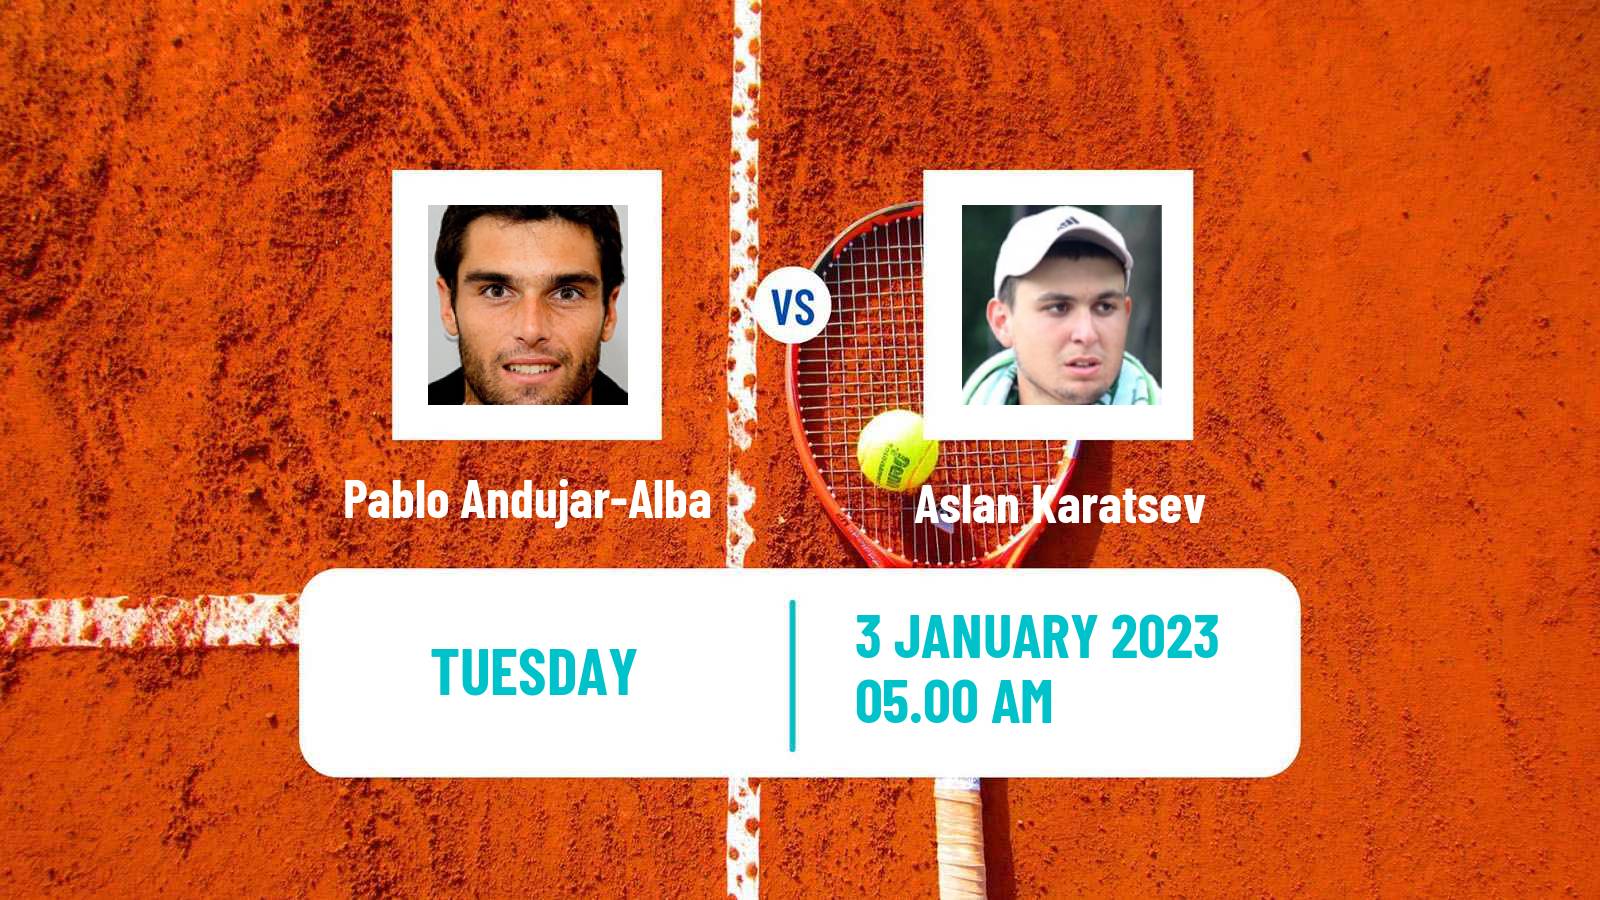 Tennis ATP Pune Pablo Andujar-Alba - Aslan Karatsev